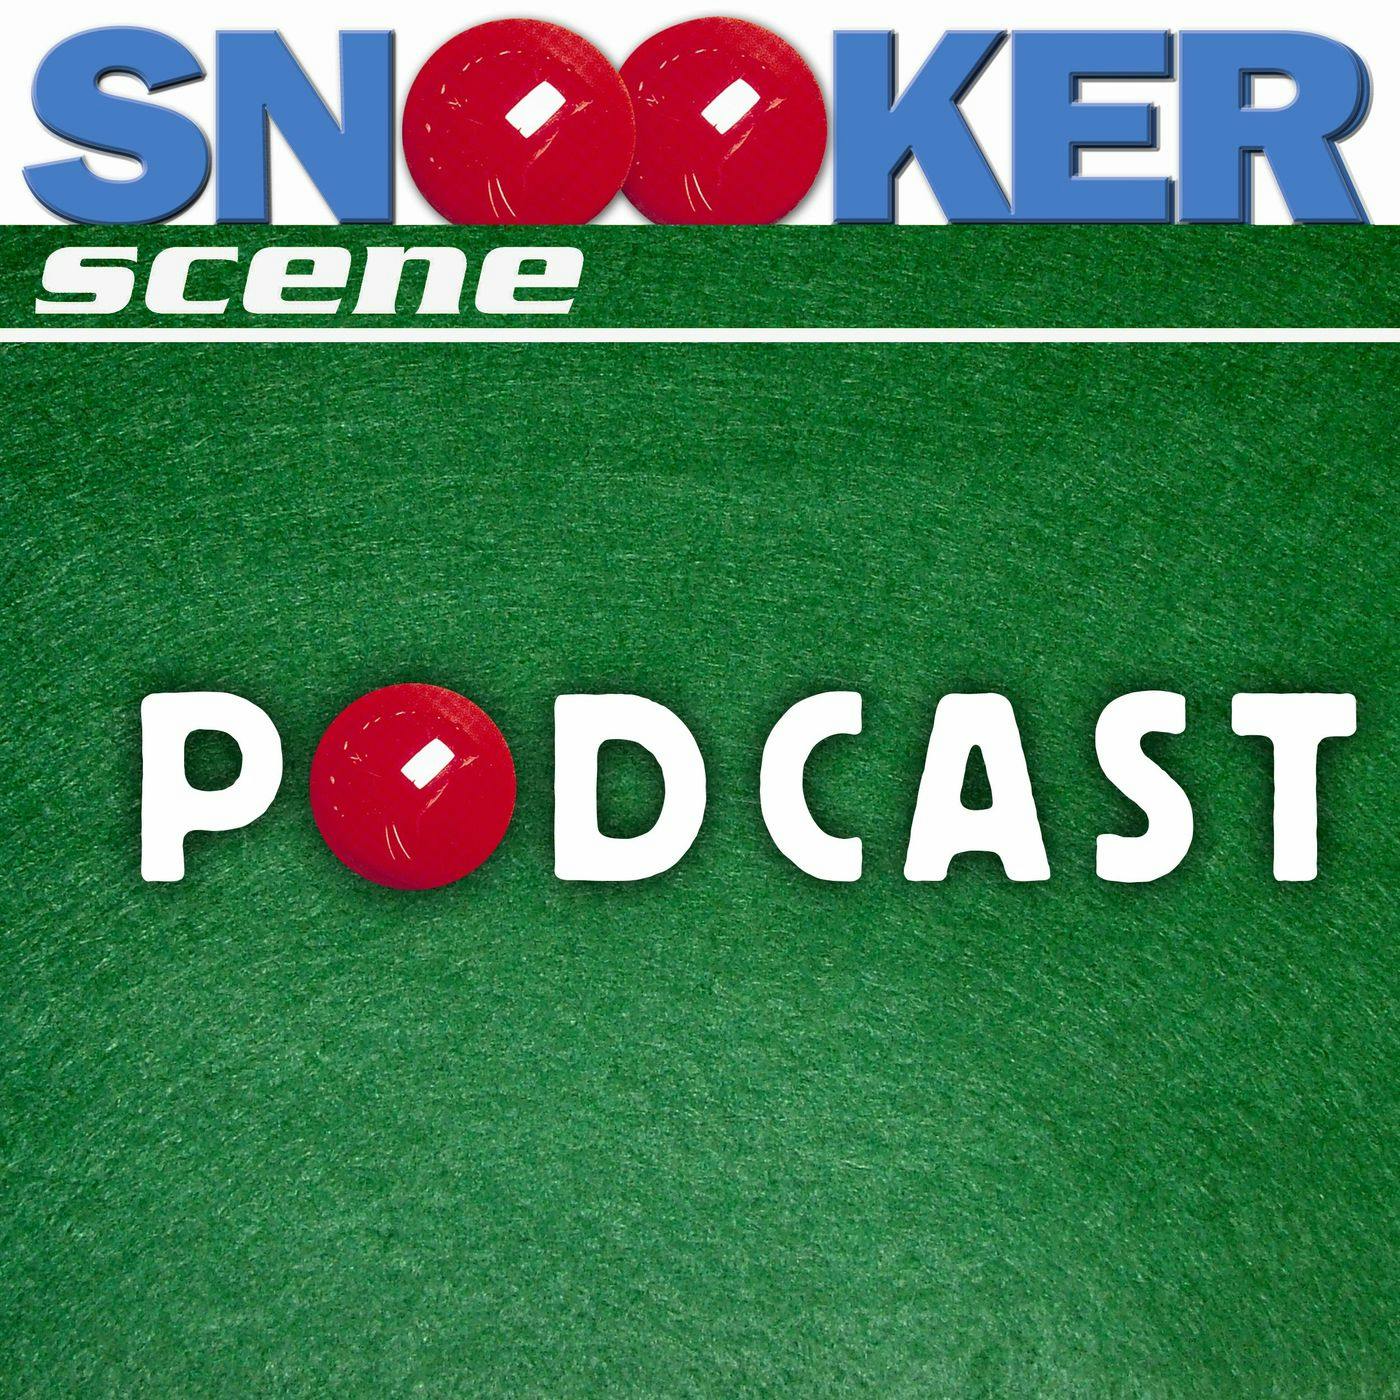 Snooker Scene Podcast episode 130 - Taking the Positives